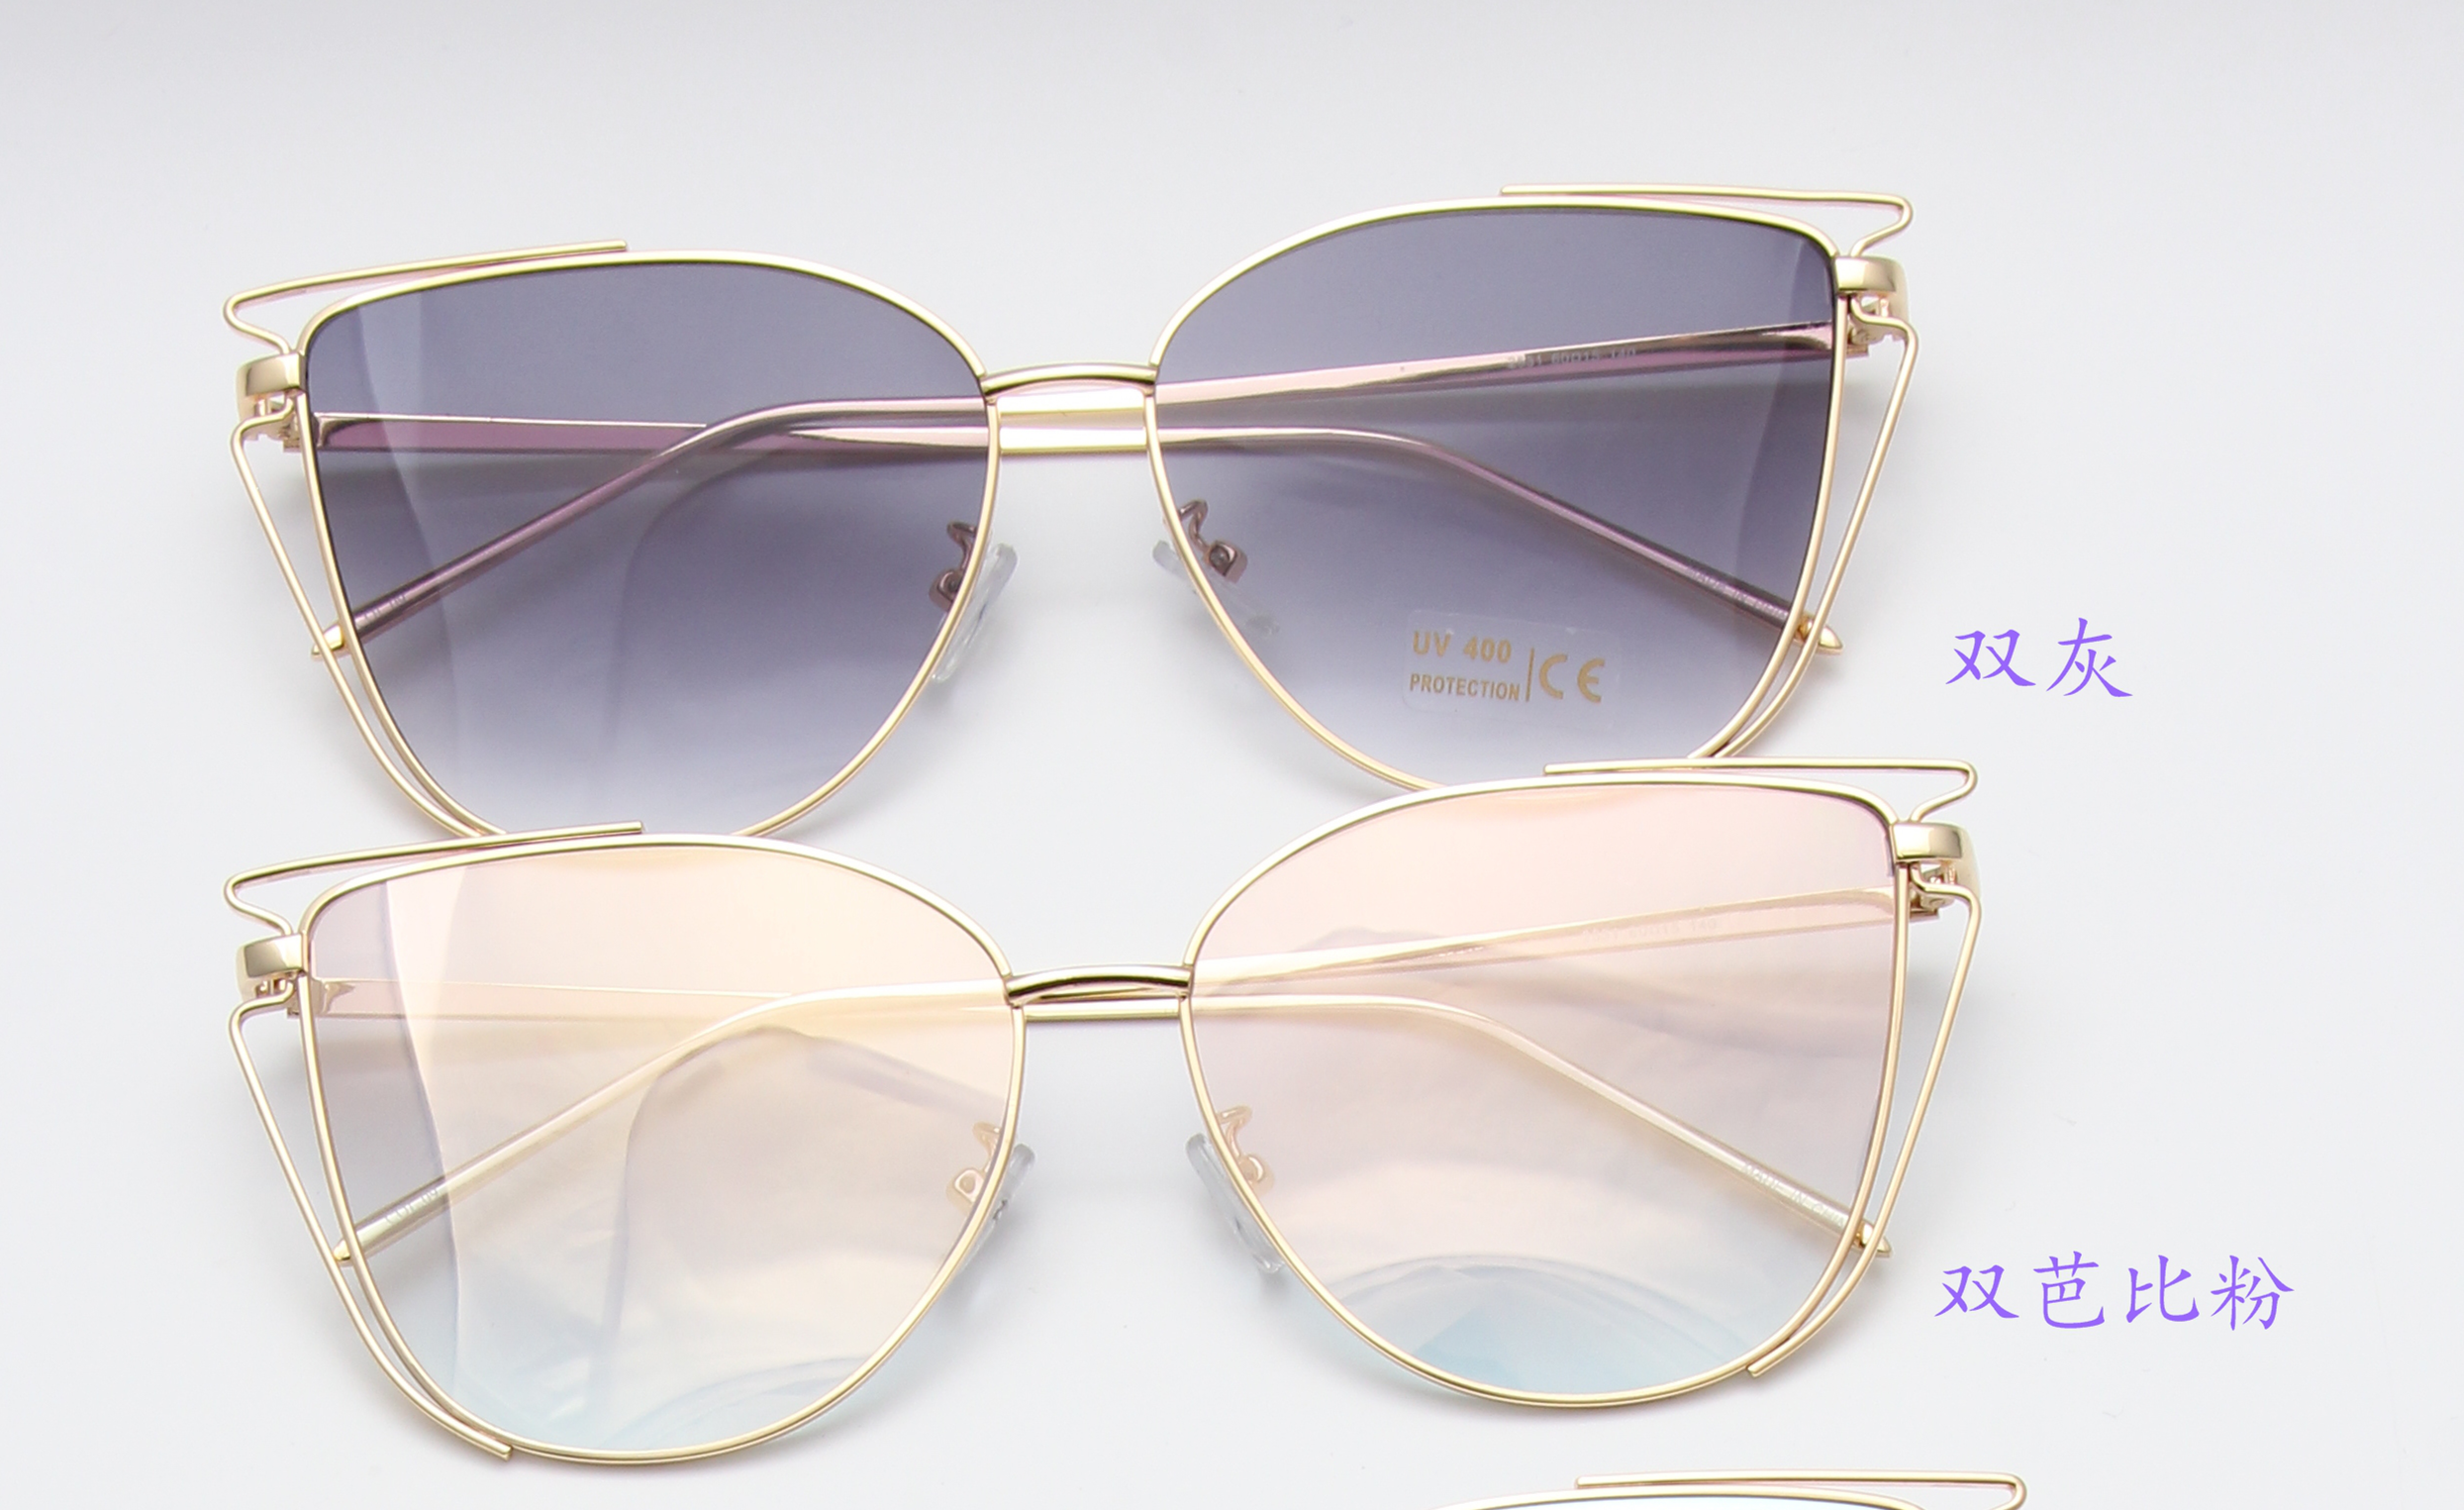 新款多色高档时尚太阳镜UV400镜片防紫外线眼镜防晒镜